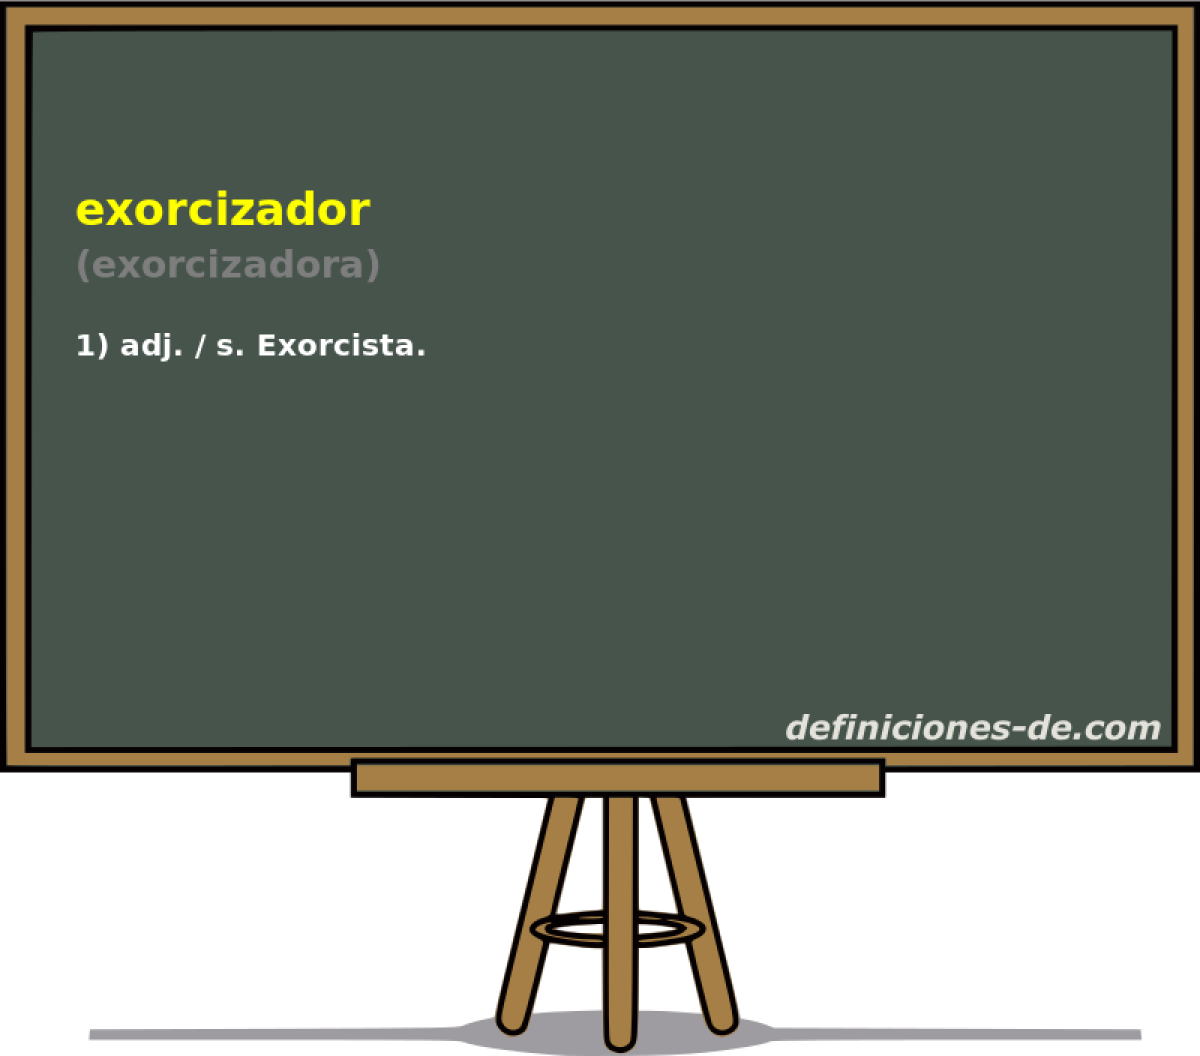 exorcizador (exorcizadora)